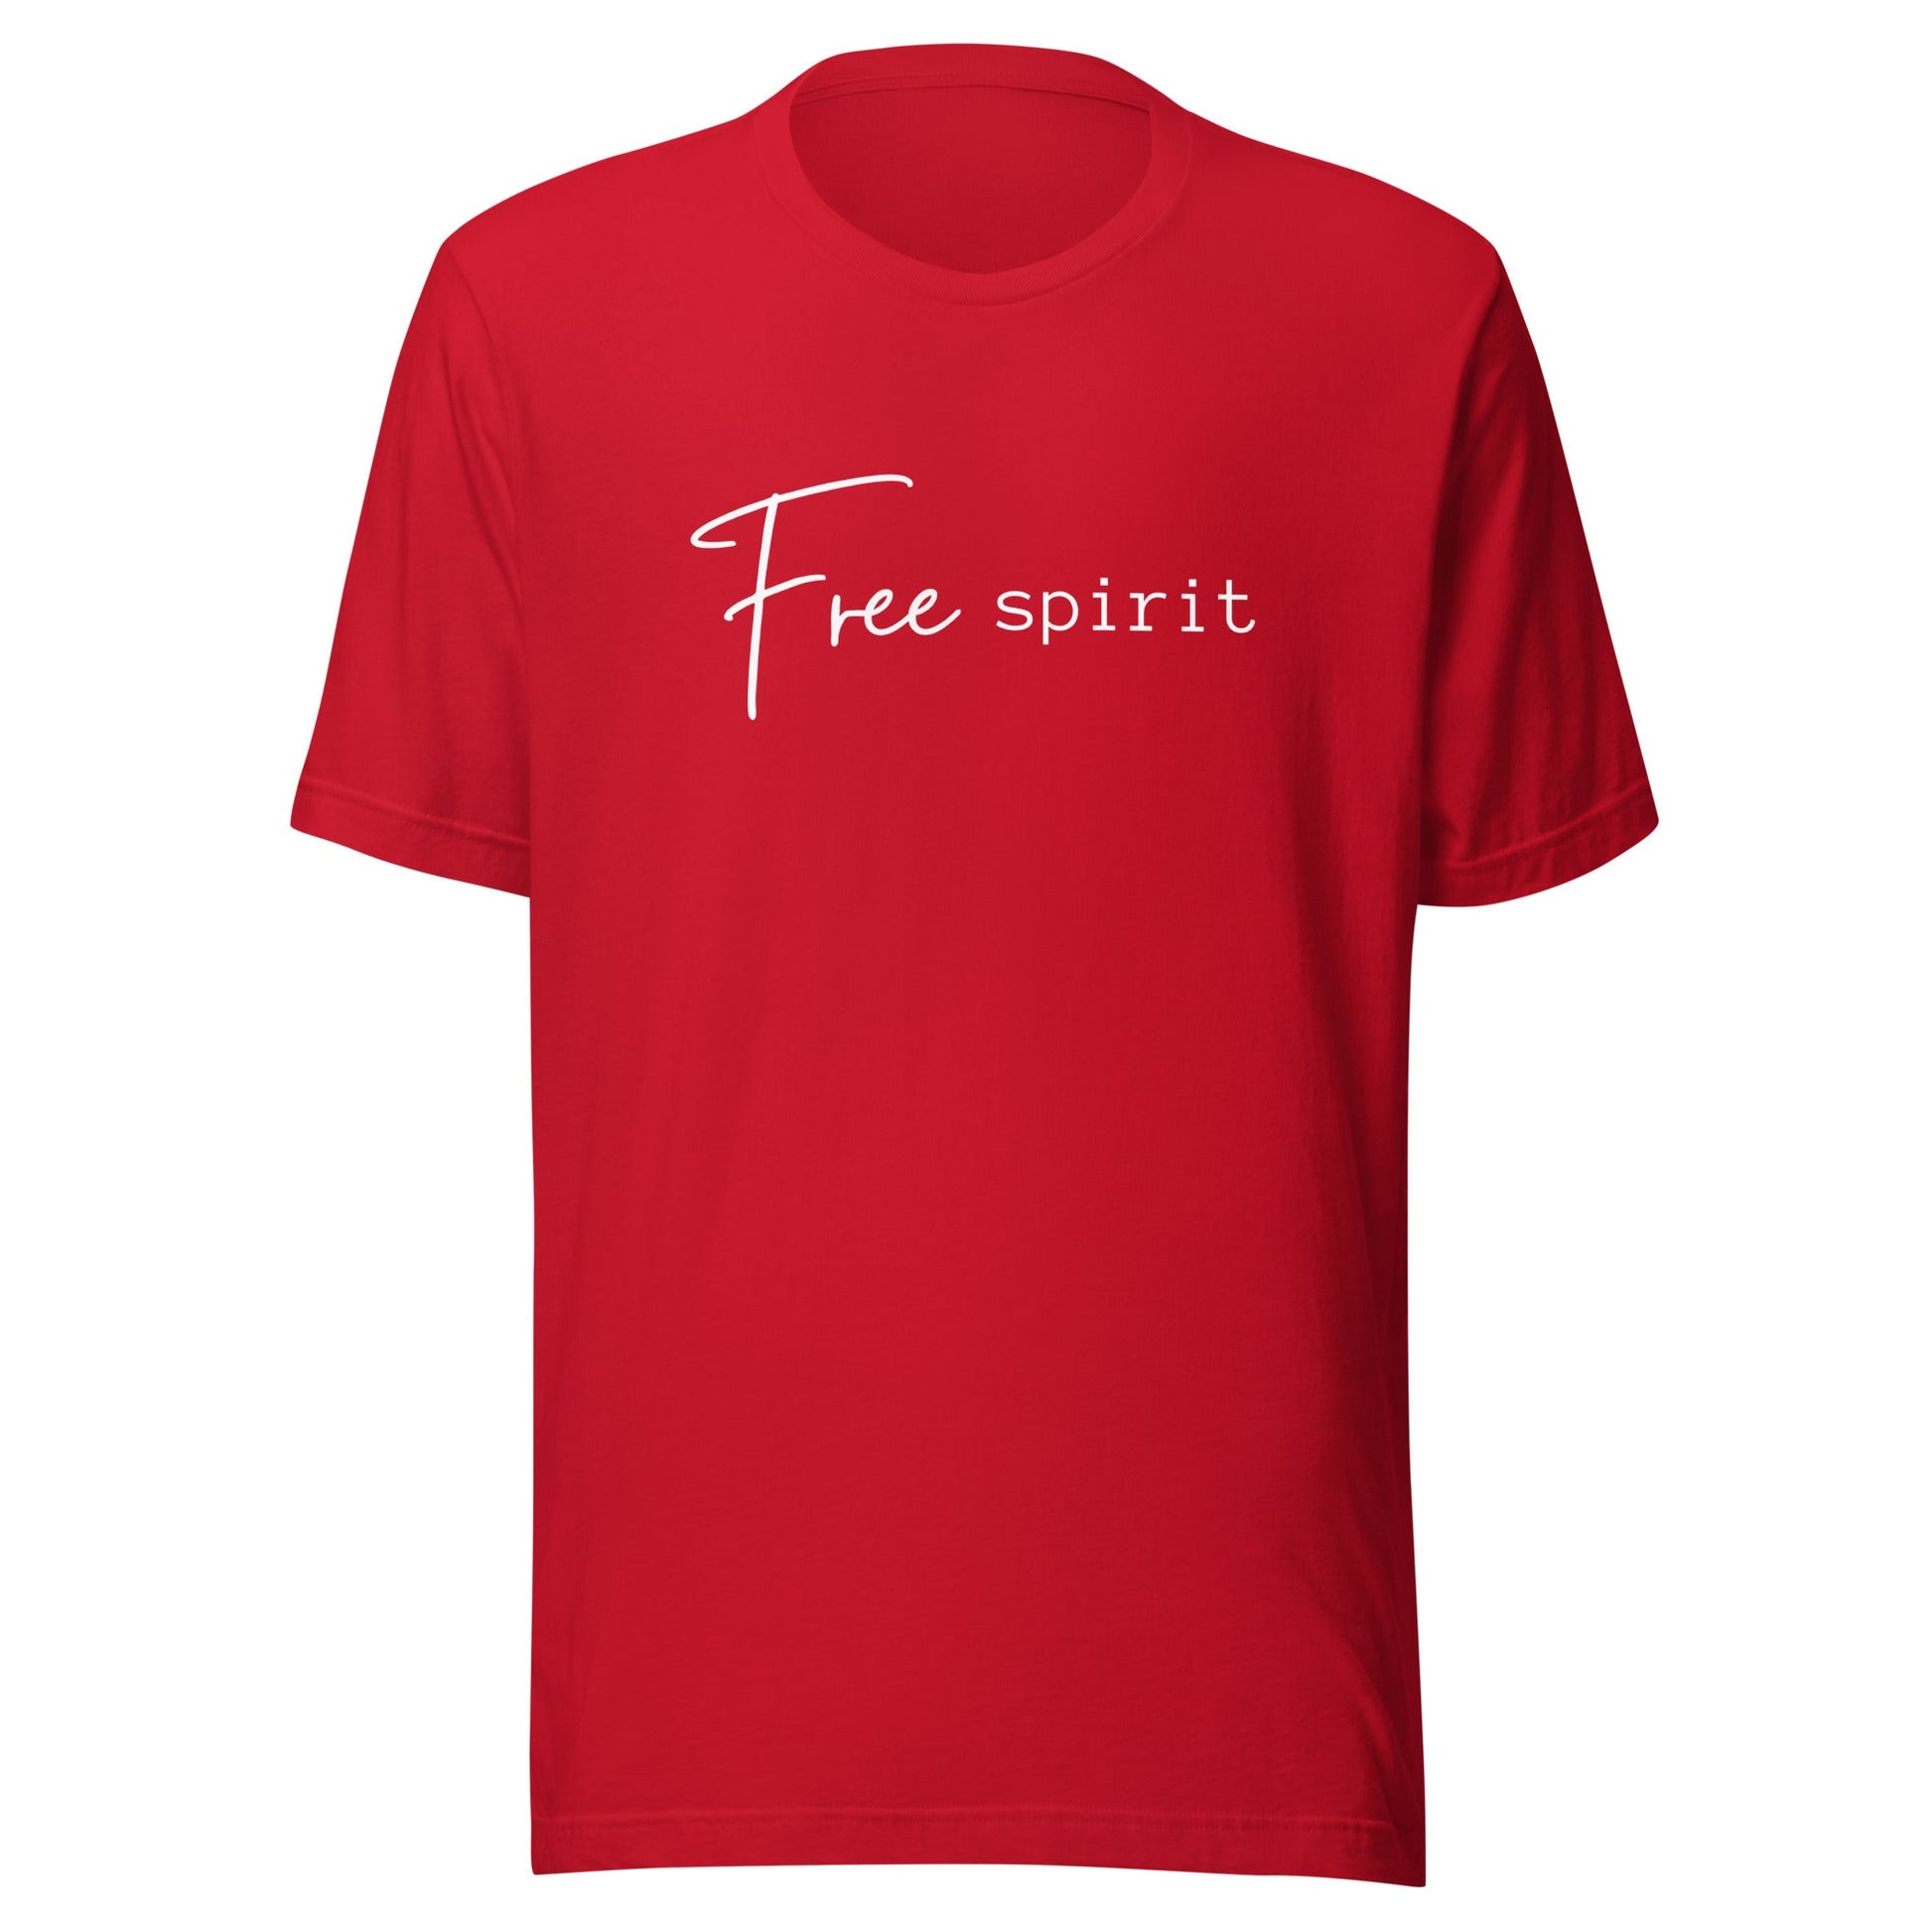 Free Spirit - Unisex t-shirt - lilaloop - T-shirt